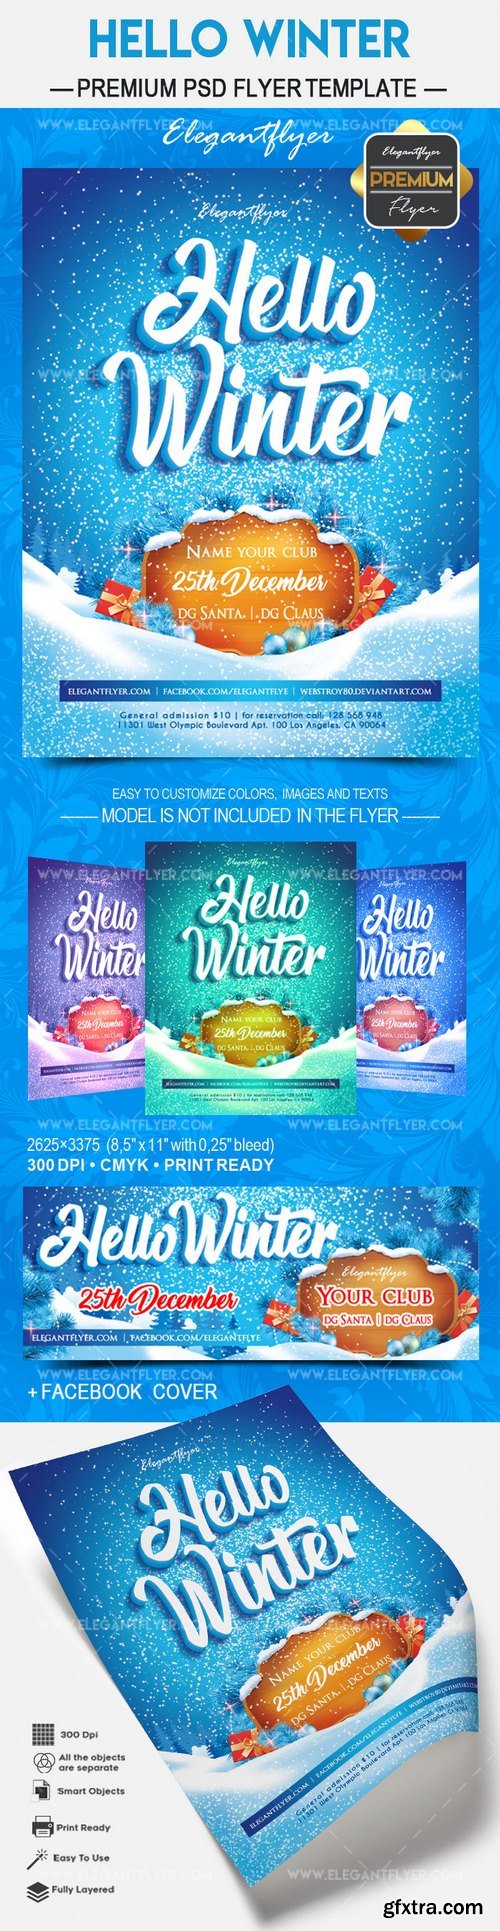 Hello Winter 2018 – Flyer PSD Template + Facebook Cover